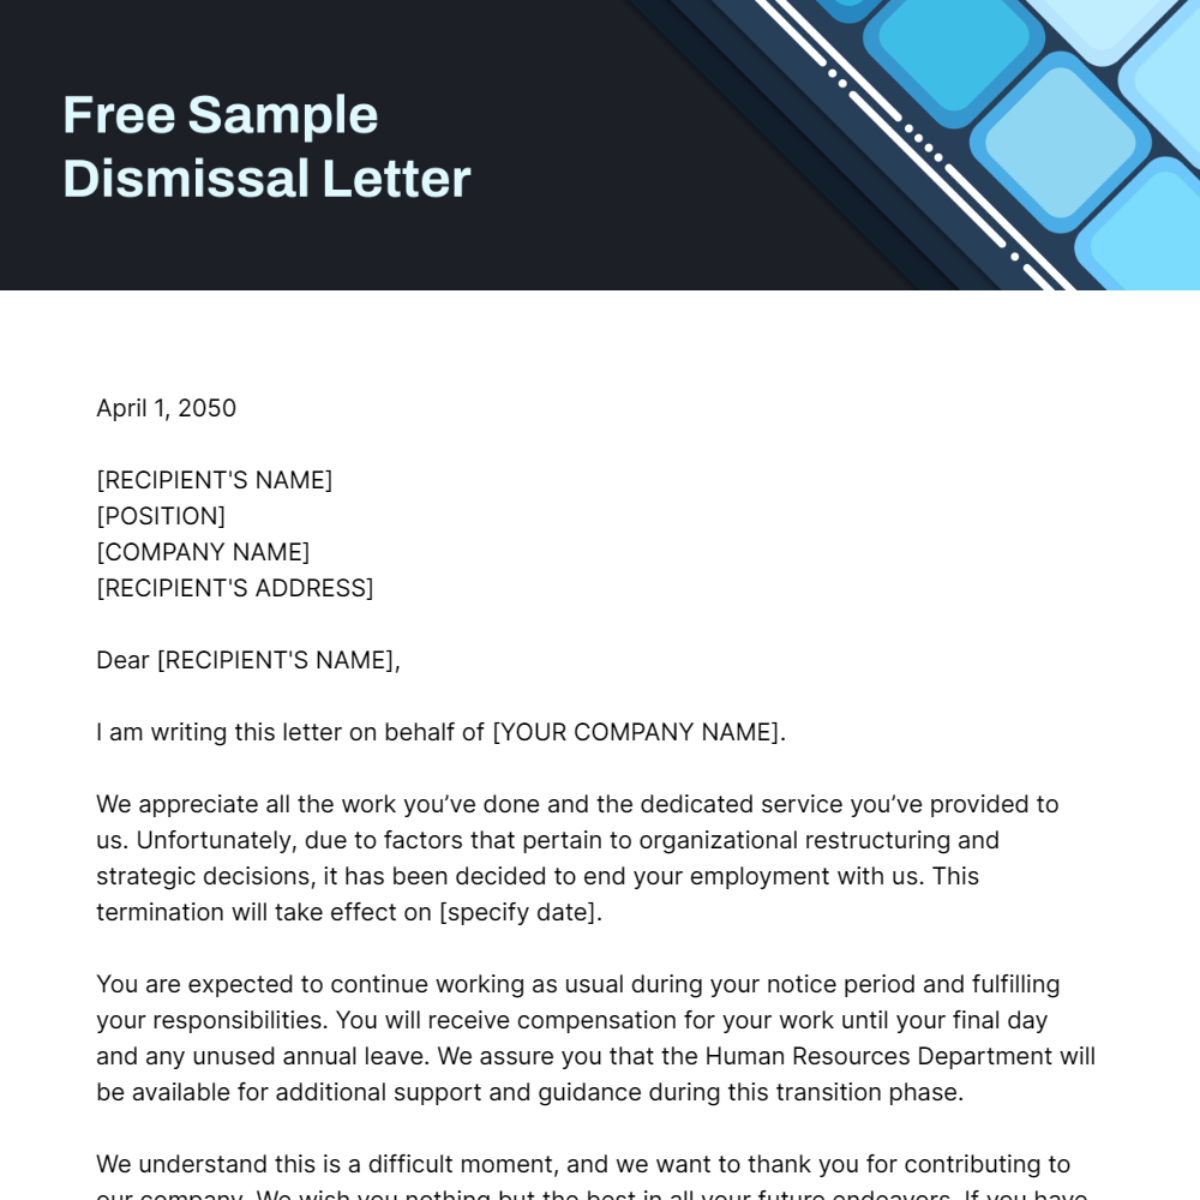 Sample Dismissal Letter Template